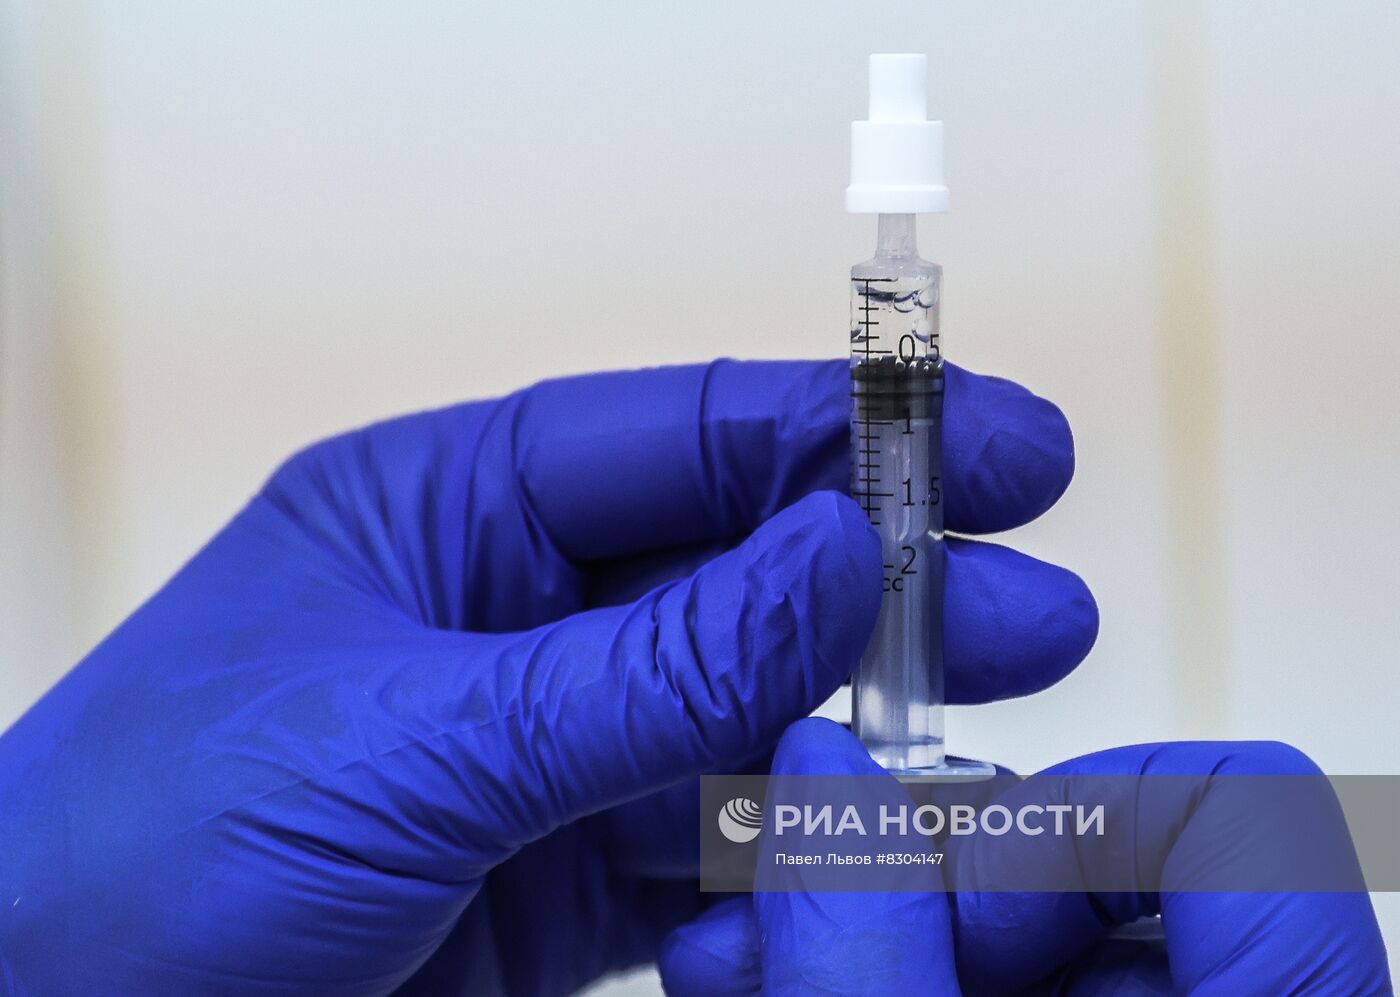 Первая партия насадок для назального введения вакцины от COVID-19 поступила в Мурманск